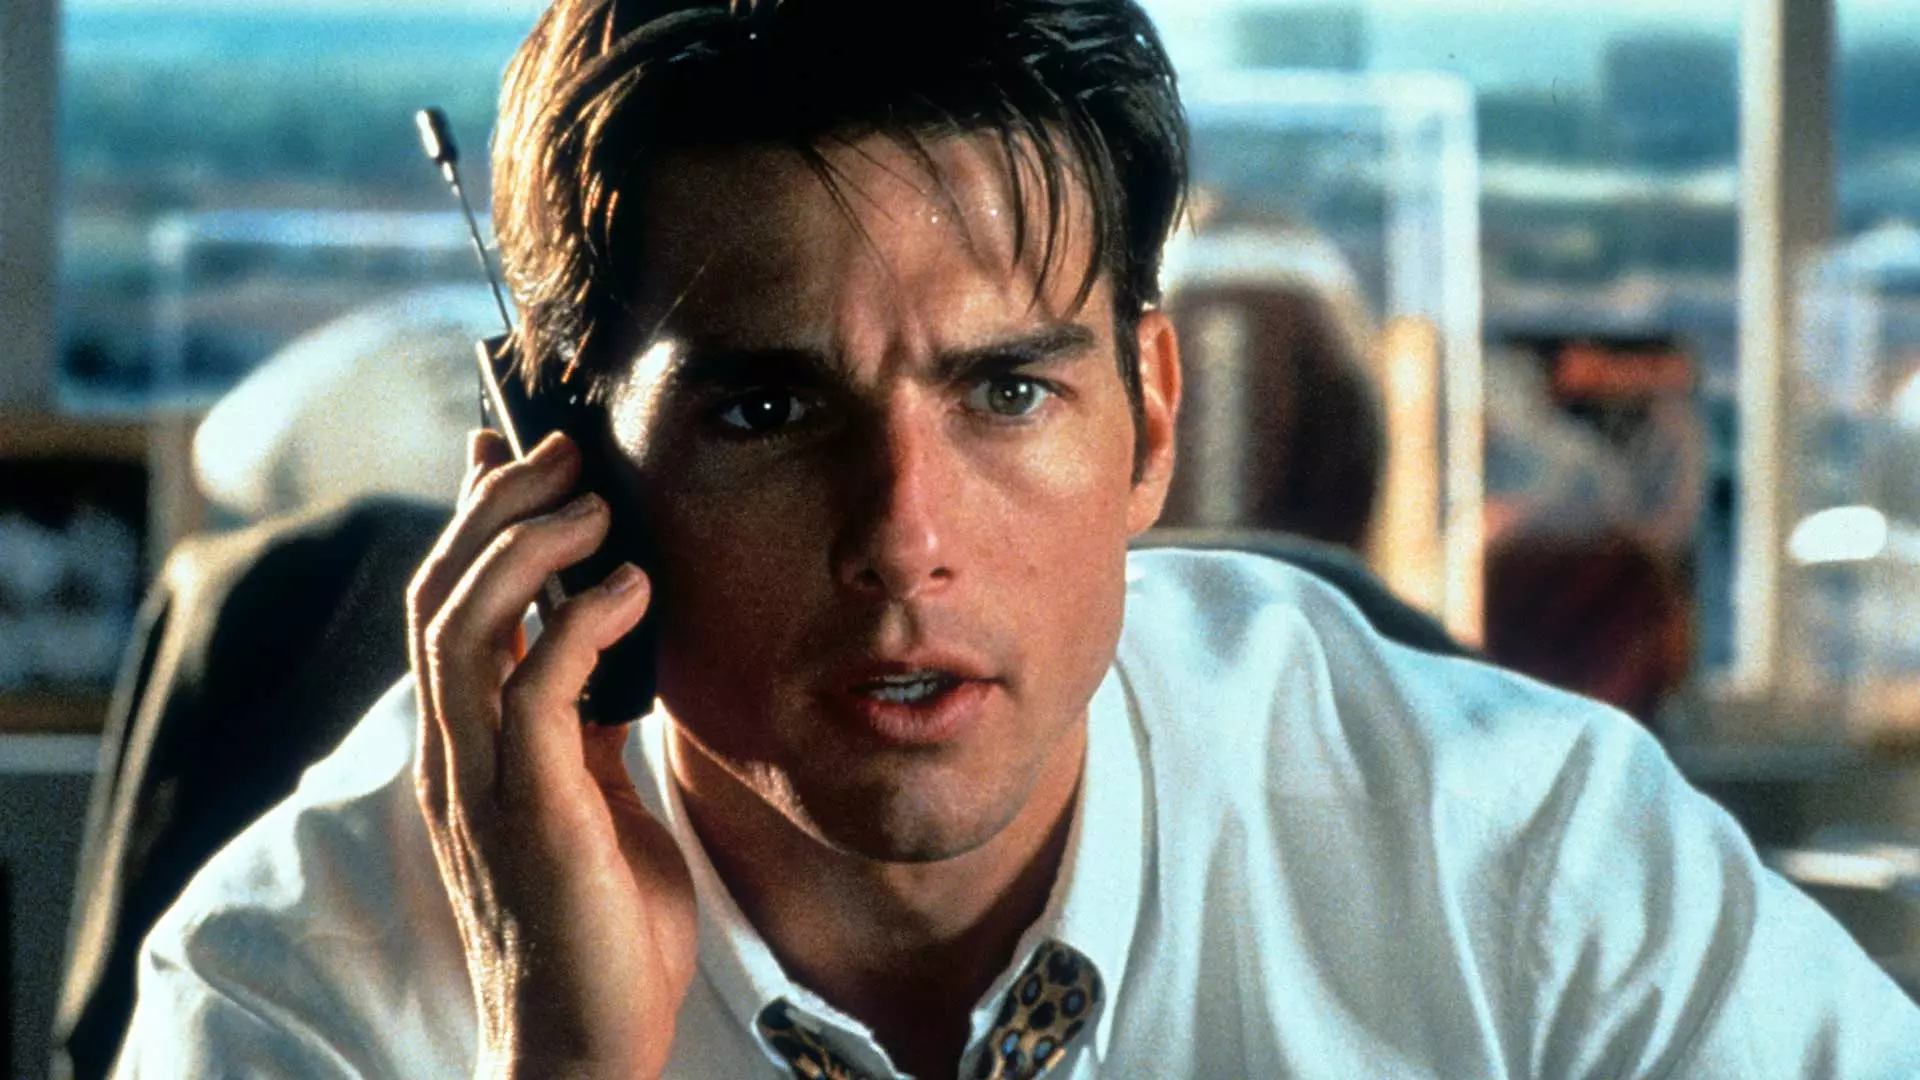 تام کروز با پیراهن سفید مشغول صحبت با تلفن در فیلم جری مگوایر